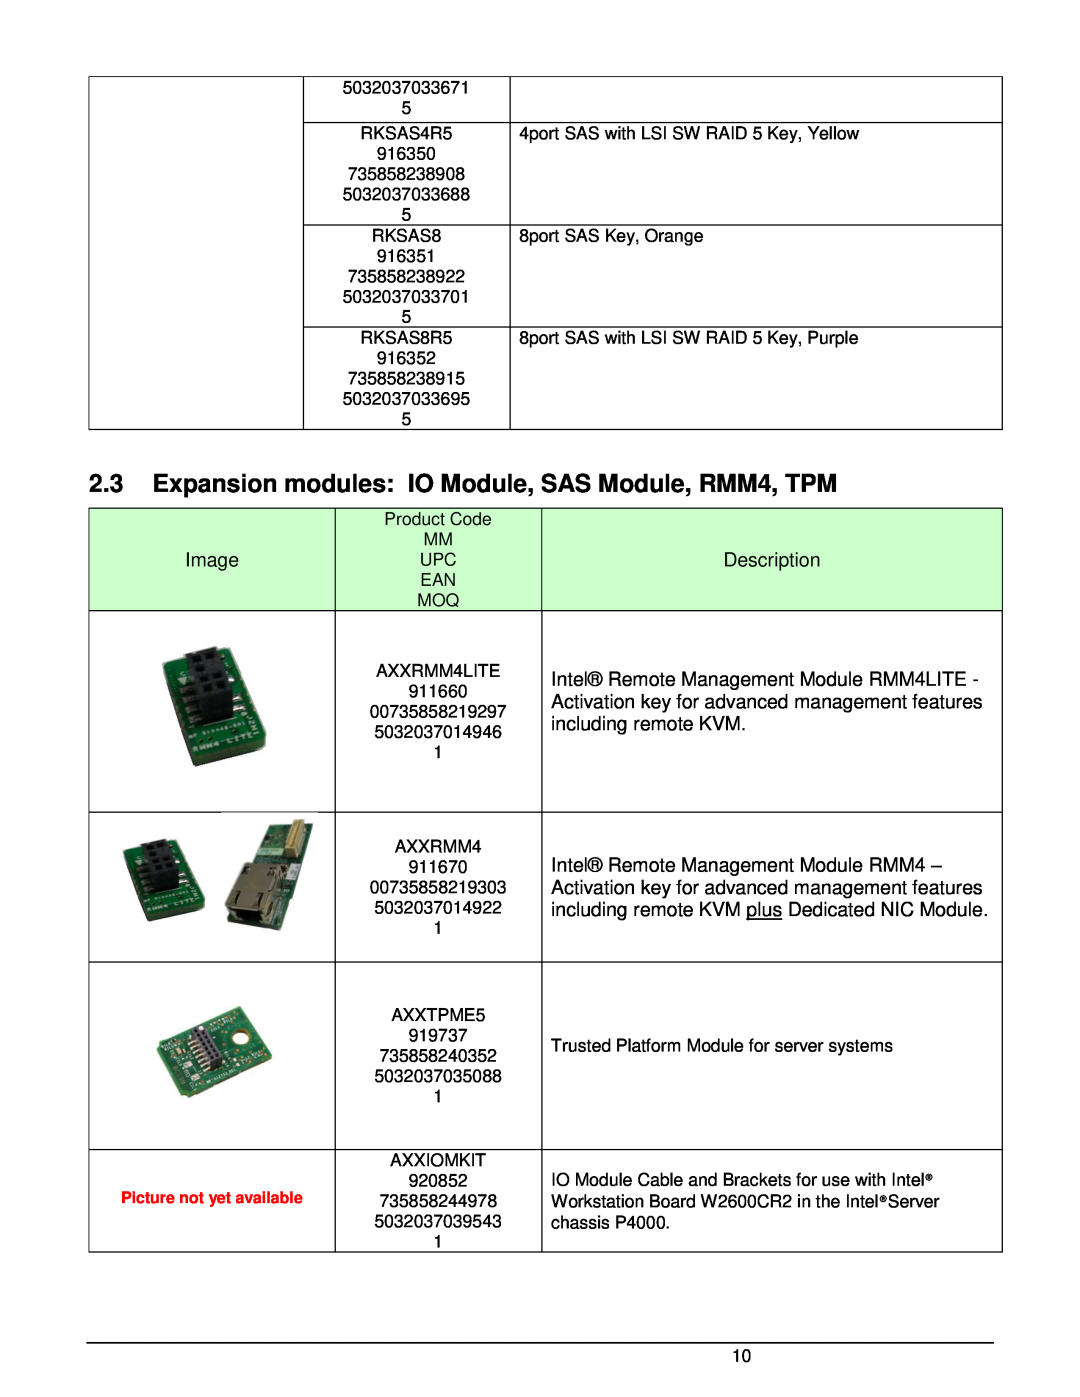 Intel W2600CR2 manual Image, Description, Intel Remote Management Module RMM4LITE, including remote KVM 